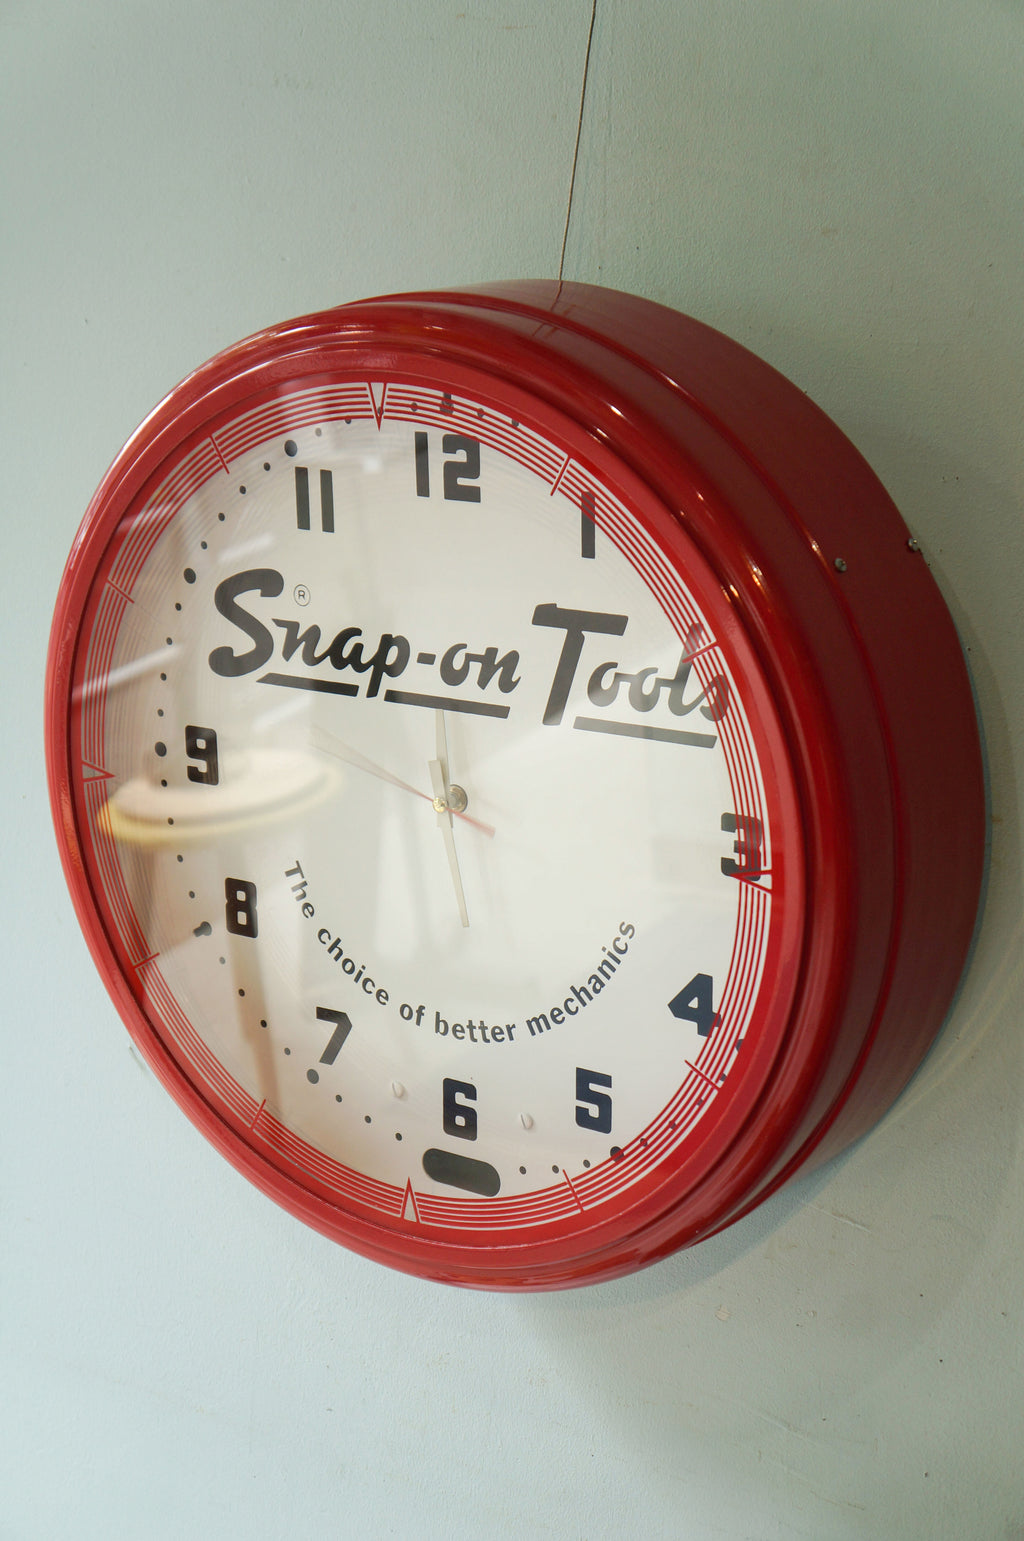 Snap-on Tools Wall Clock/スナップオン ウォールクロック 壁掛け時計